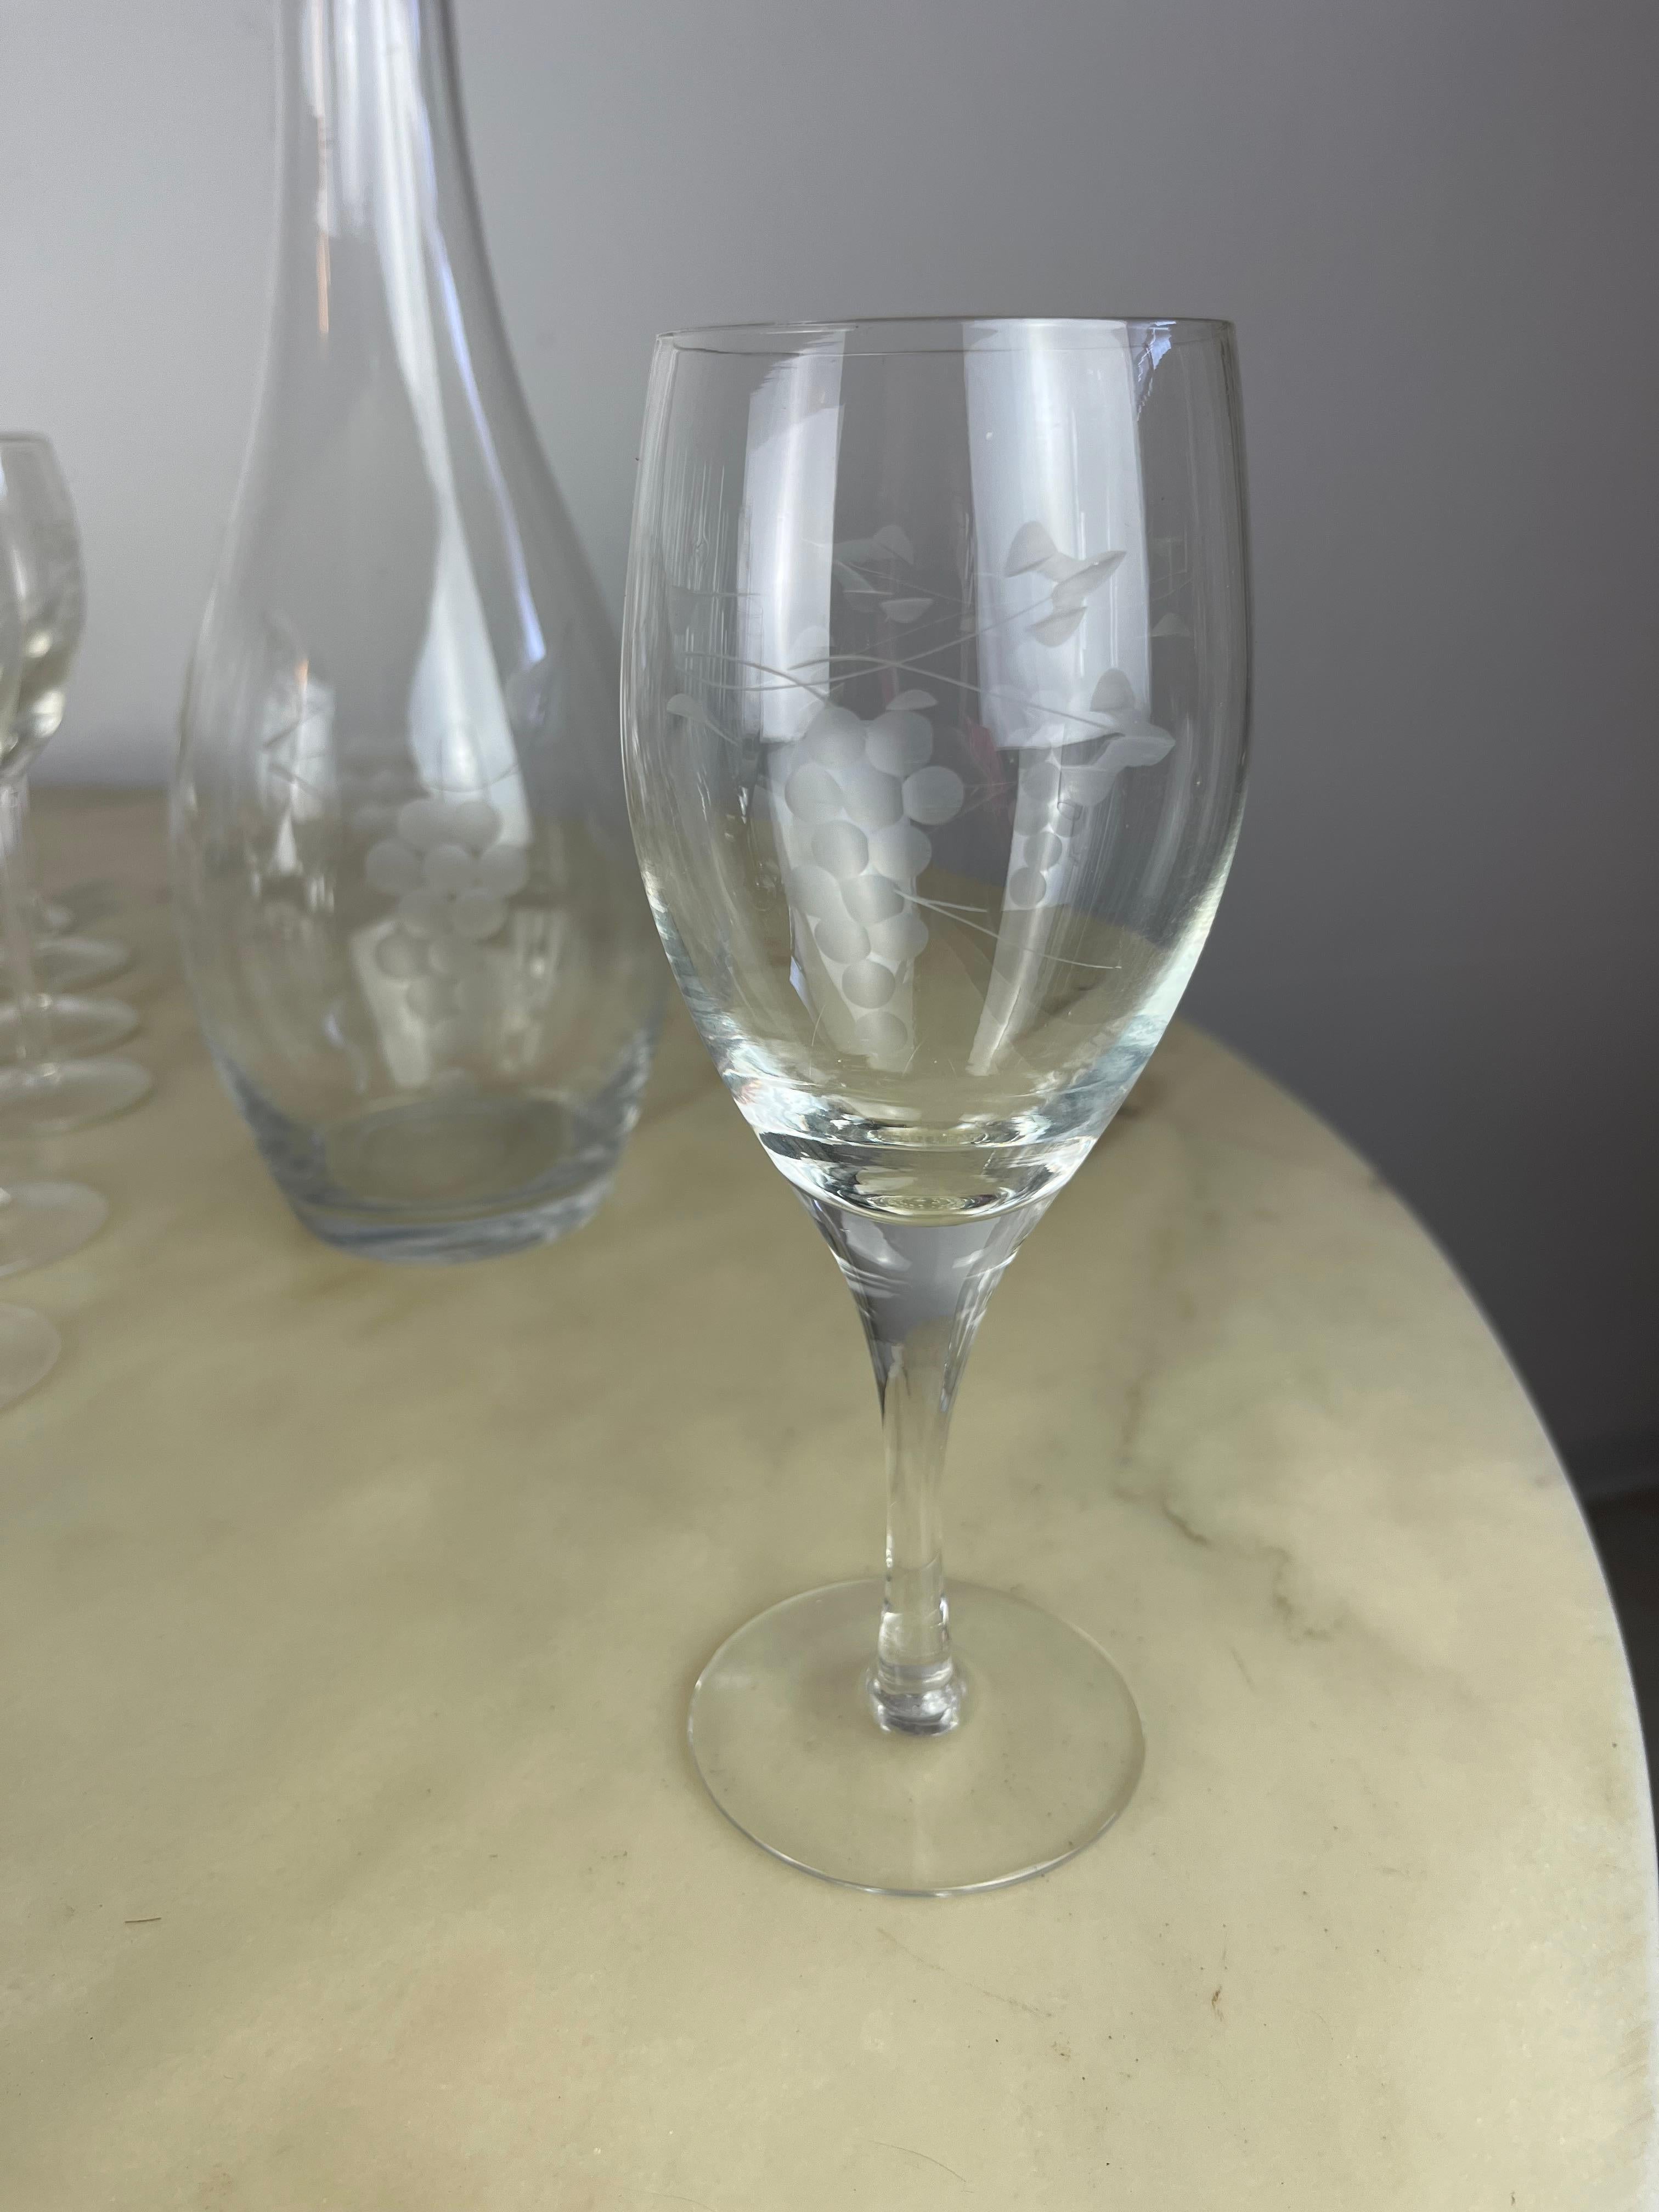 35-teiliges Service aus Kristallglas, Italien, 1960er Jahre
Glasset bestehend aus 1 Krug, 1 Karaffe, 12 Wassergläser, 9 Weingläser, 12 Gläser.
Handgravur von Weintrauben auf der Oberfläche. Sie stammt aus den 1960er Jahren.
Gute Bedingungen.